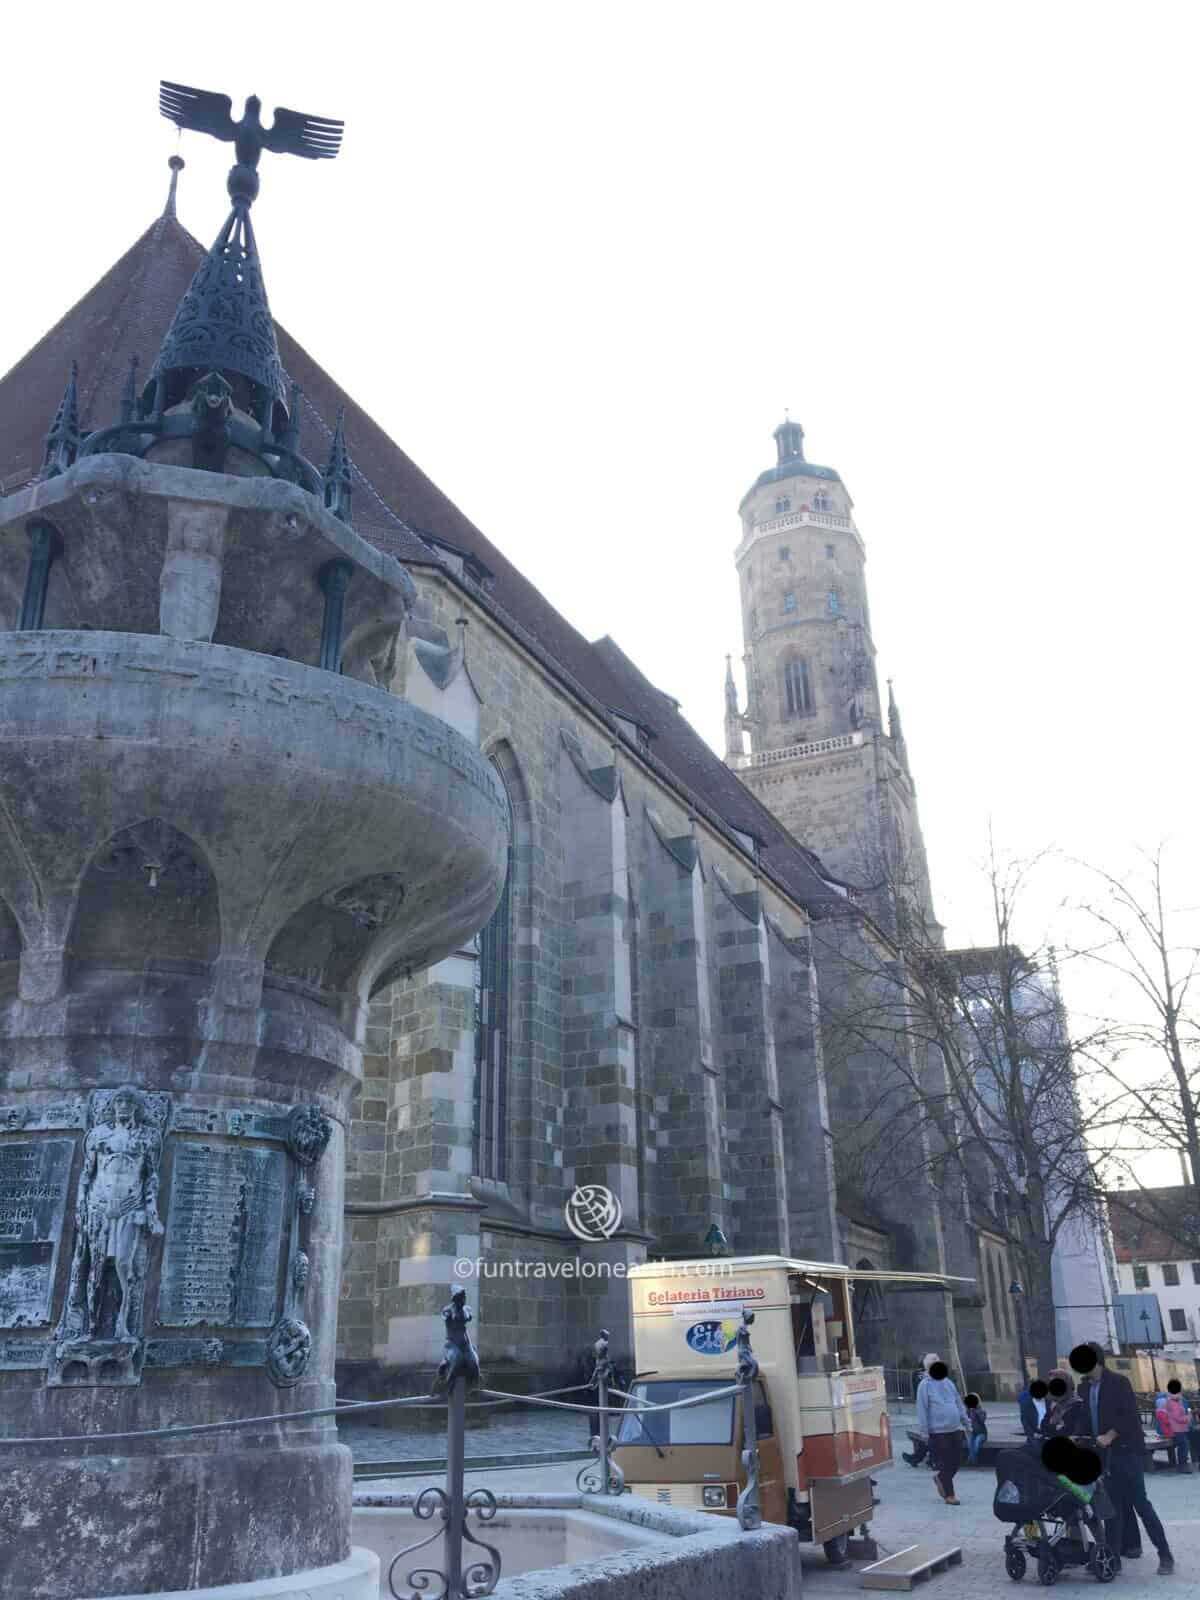 St.-Georgs-Kirche, Nördlingen, Germany